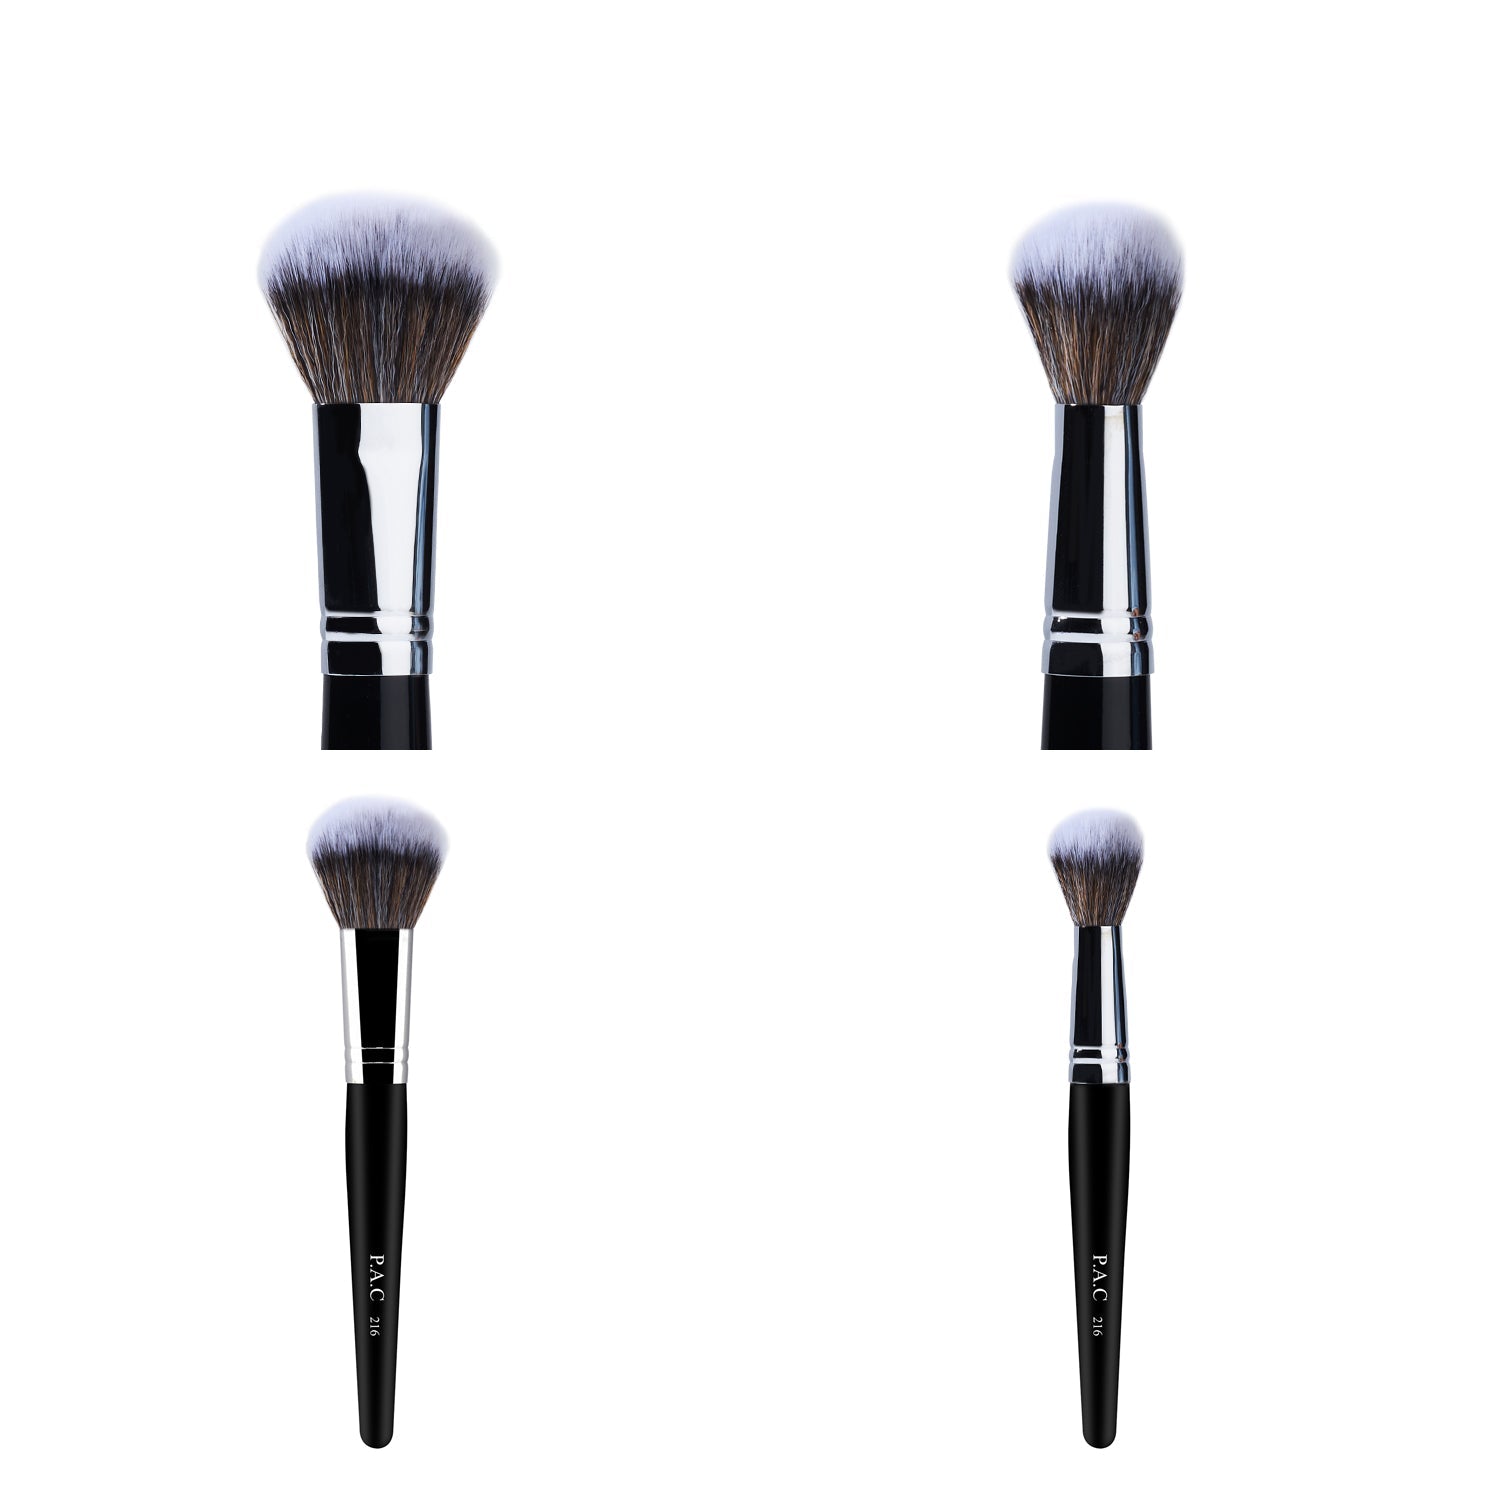 PAC Cosmetics Powder Brush 216